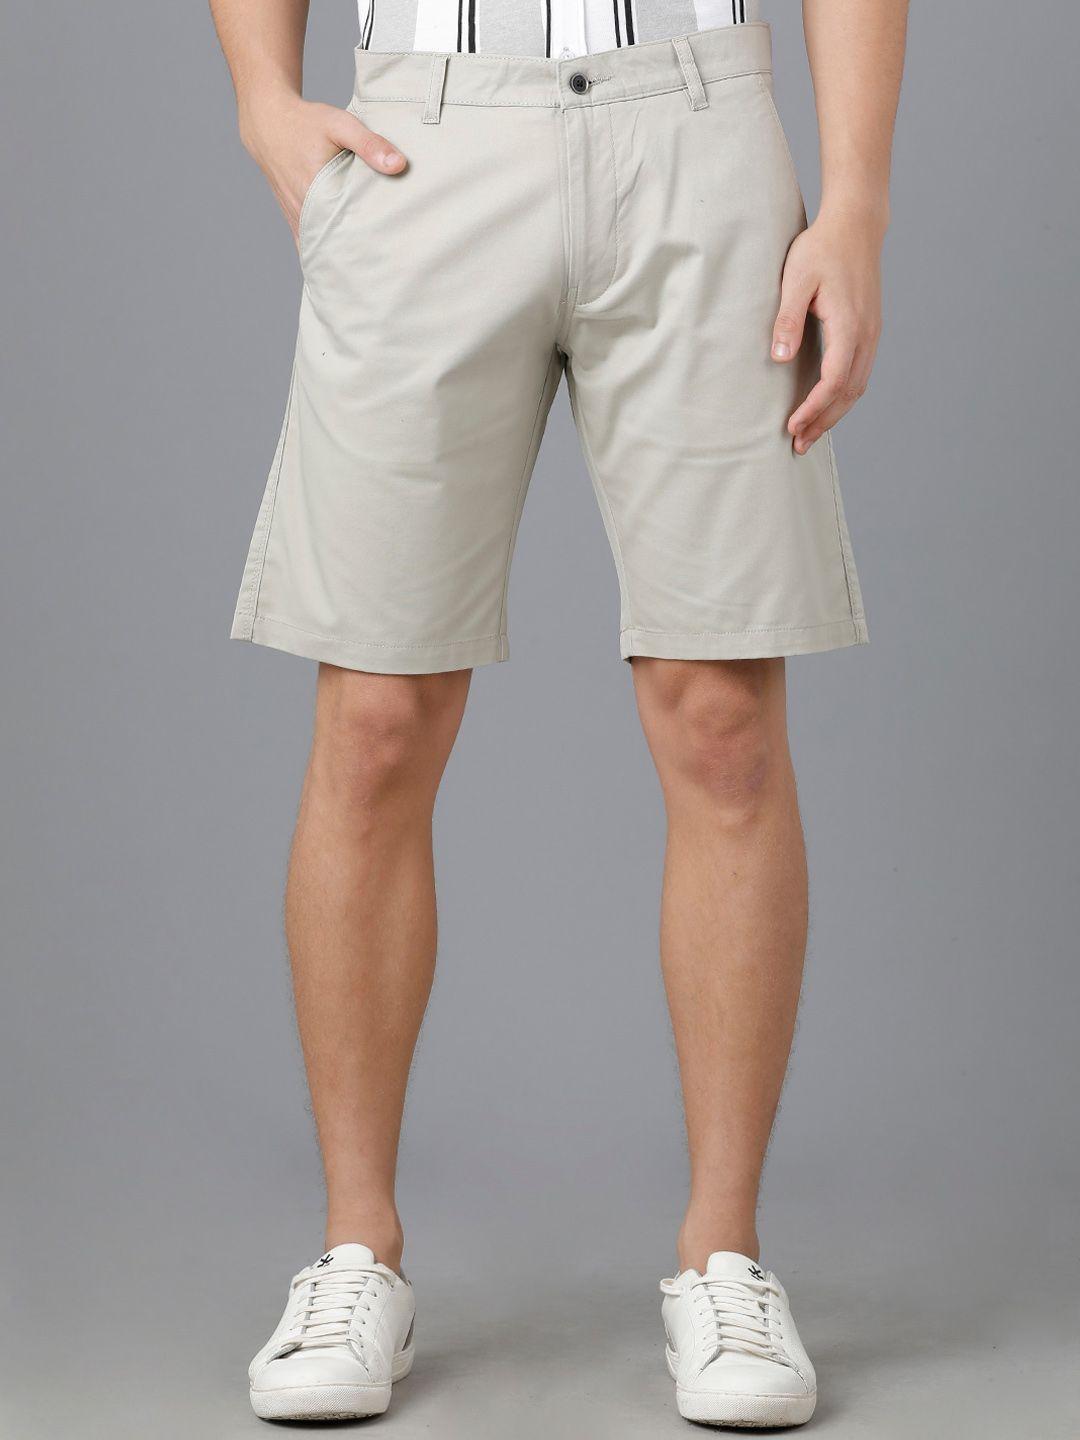 yovish-men-slim-fit-shorts